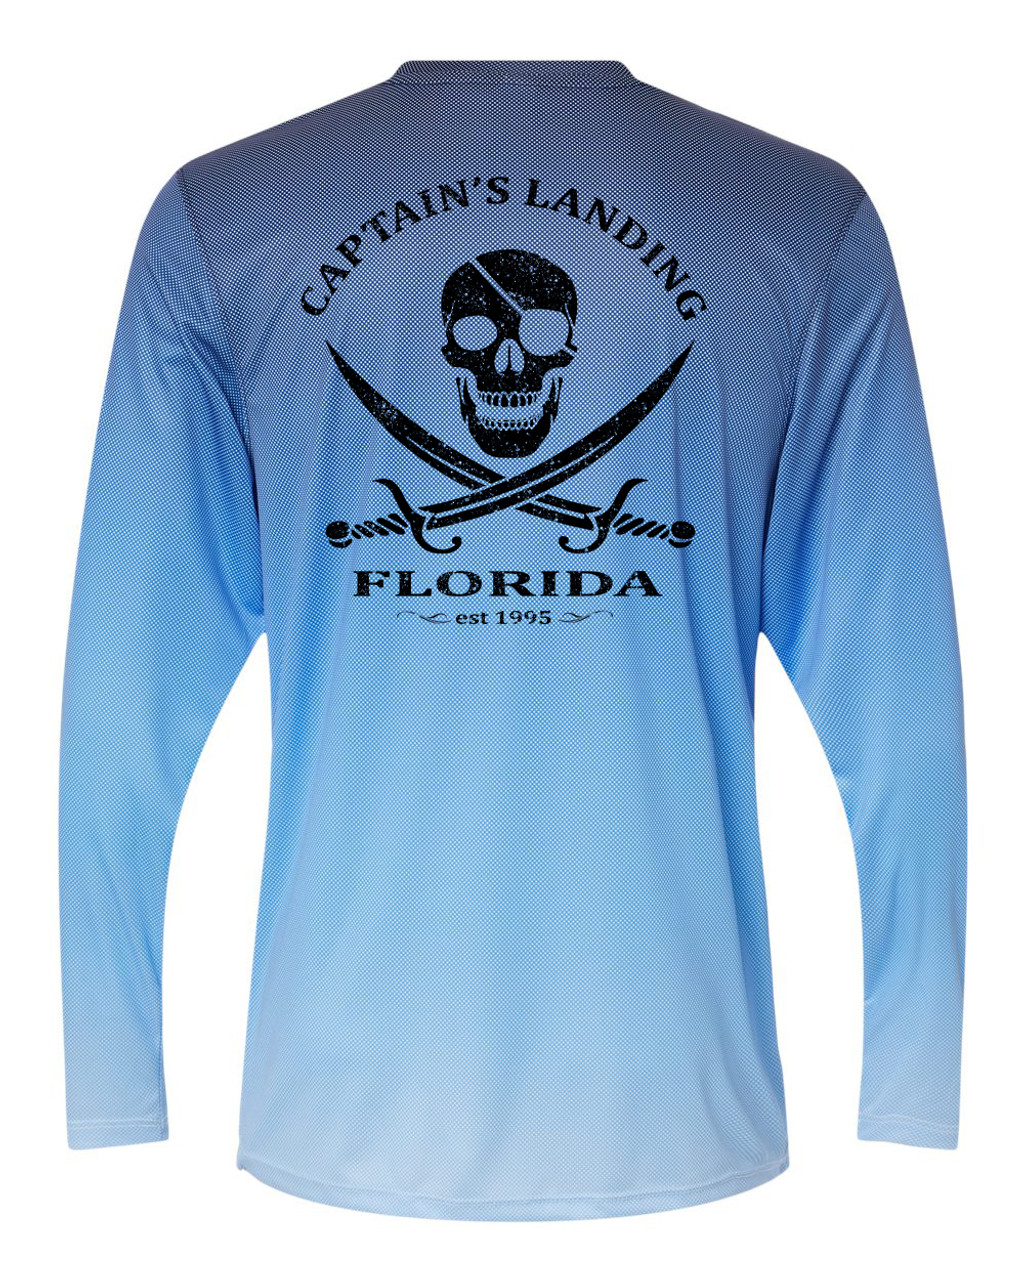 Hook Tackle Fishing Shirts Short Sleeve UV Protection T-Shirts